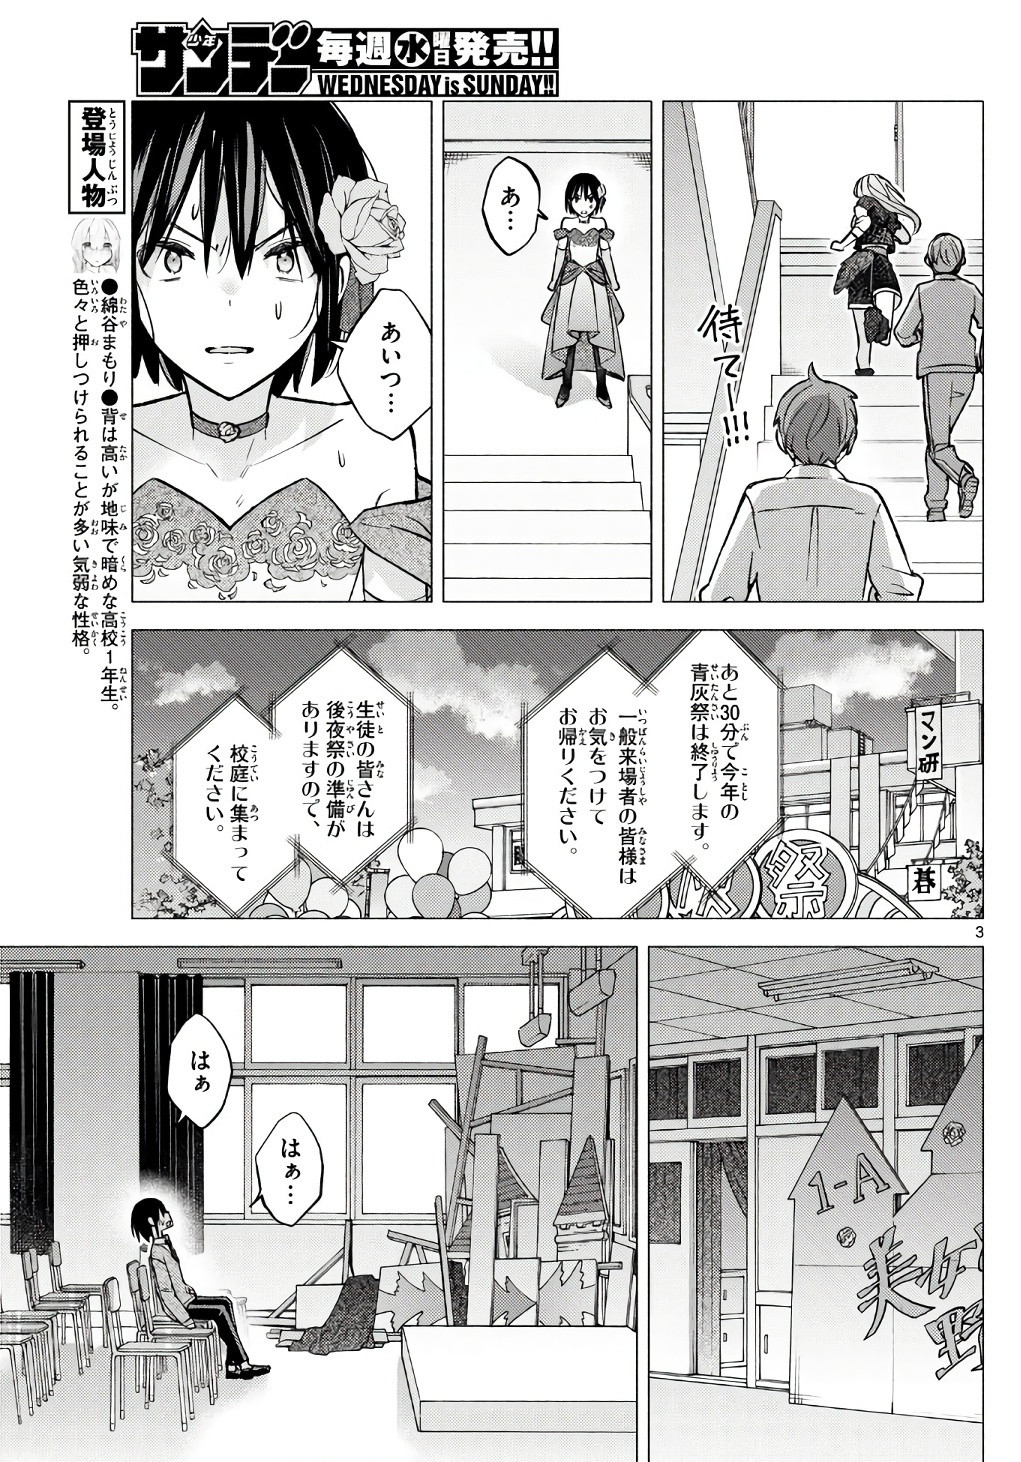 Kimi to Warui Koto ga Shitai - Chapter 066 - Page 3